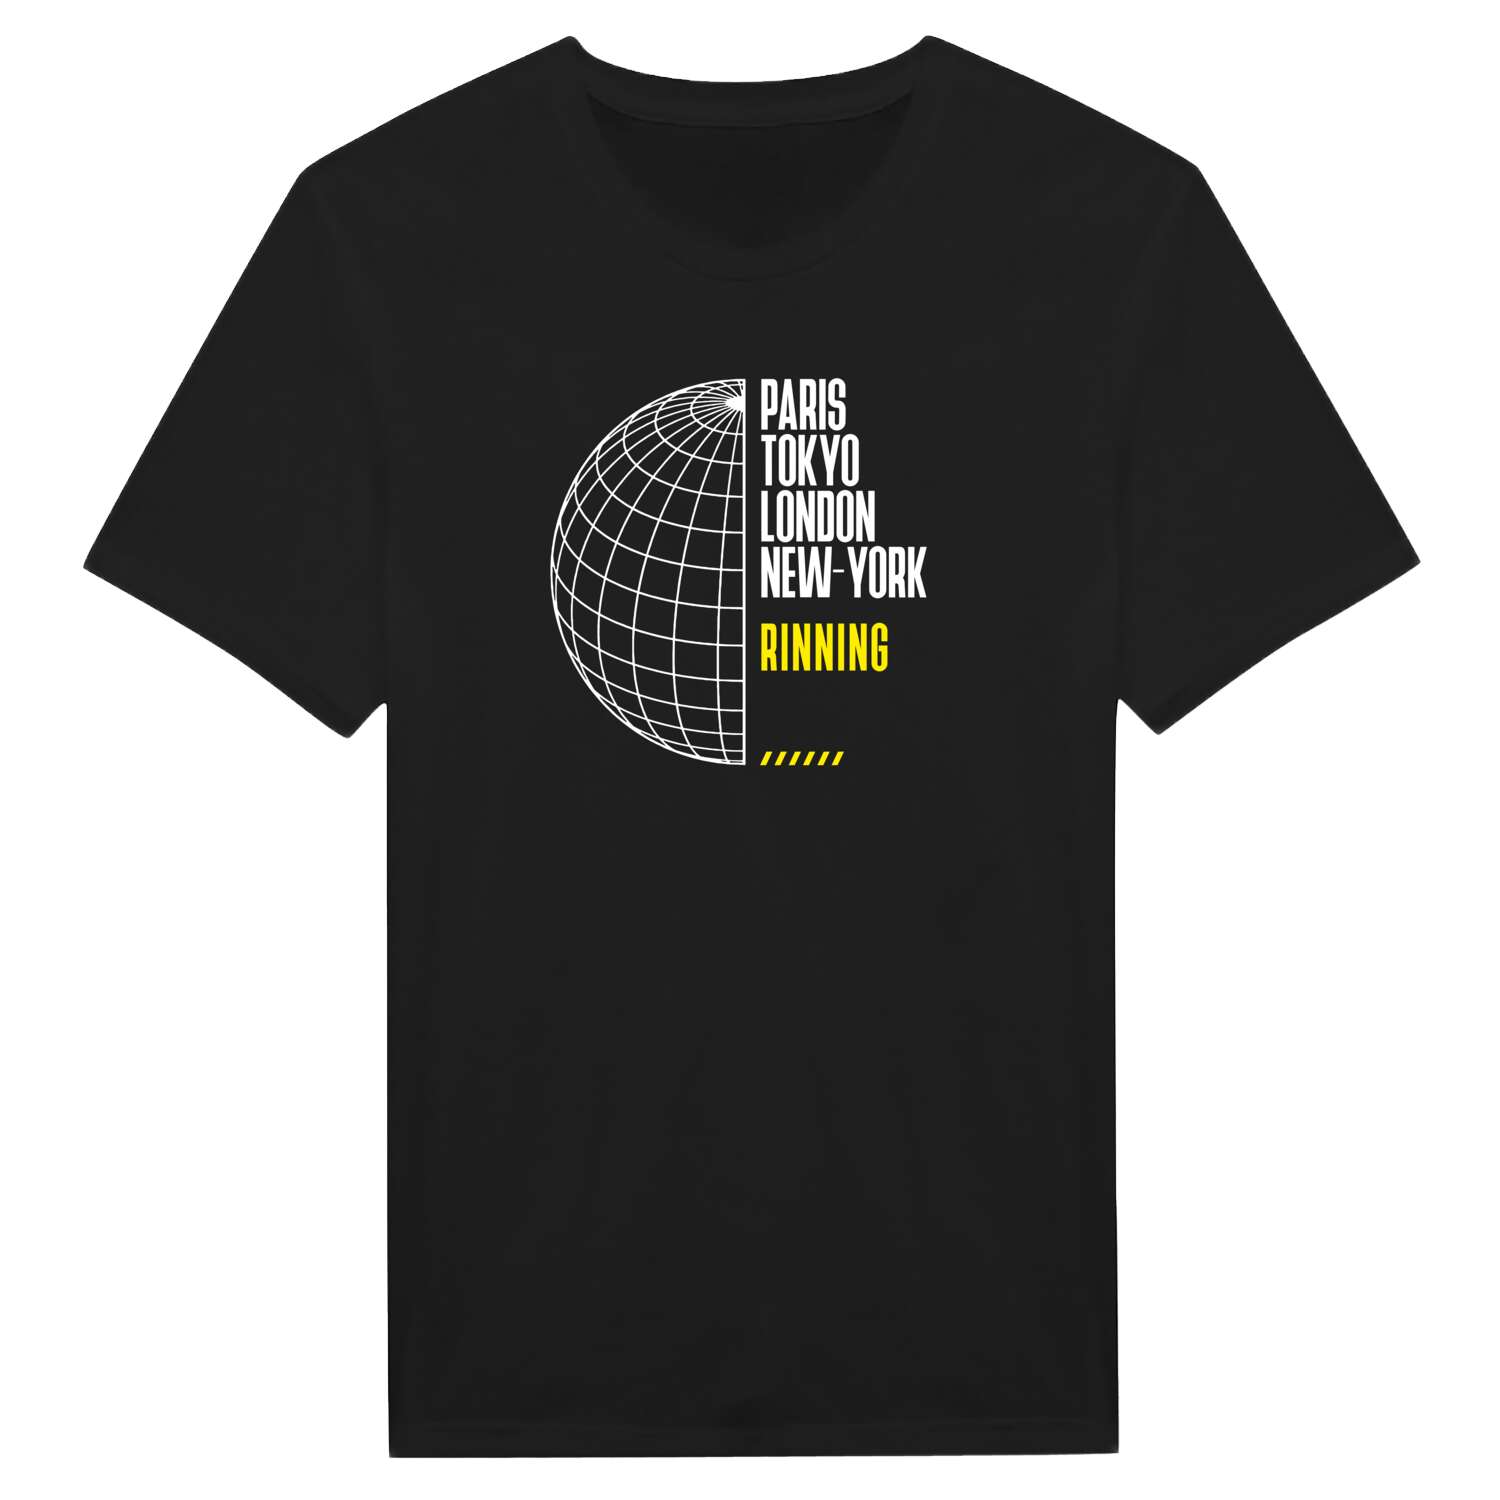 Rinning T-Shirt »Paris Tokyo London«